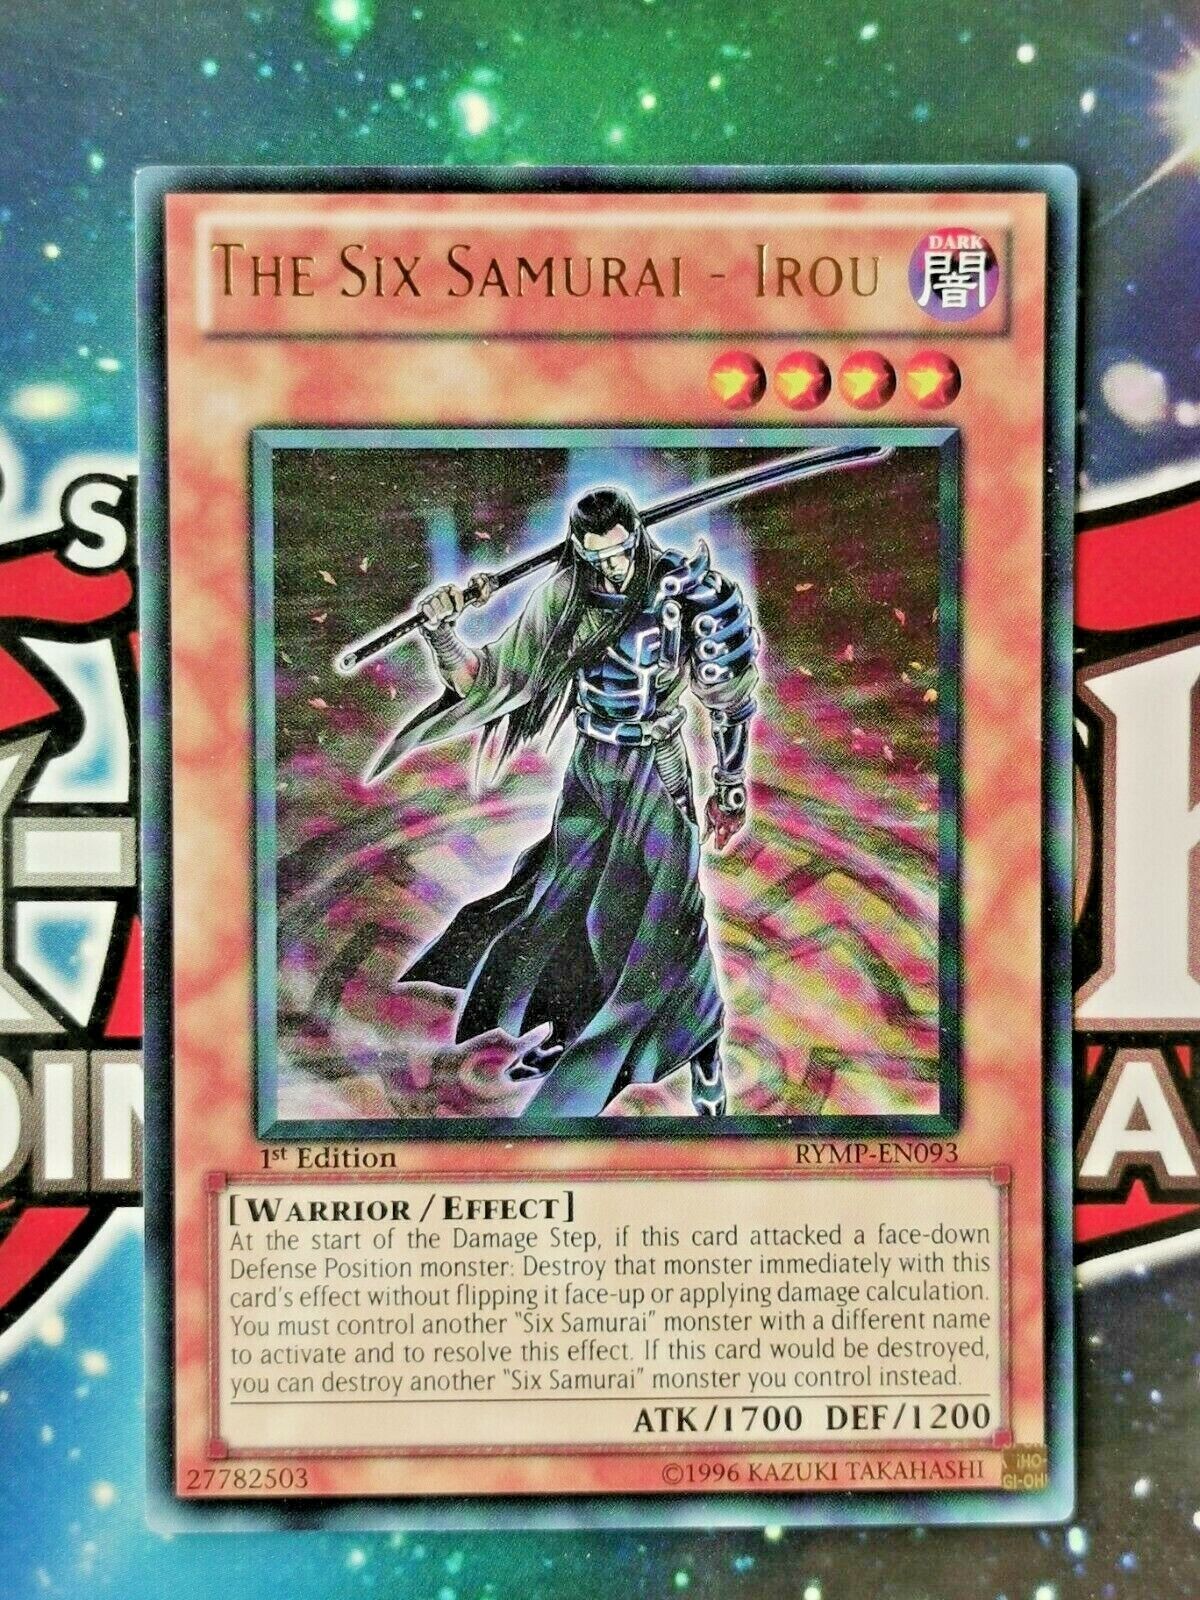 M-Warrior #1 LOB-076 Common Yugioh Card NM